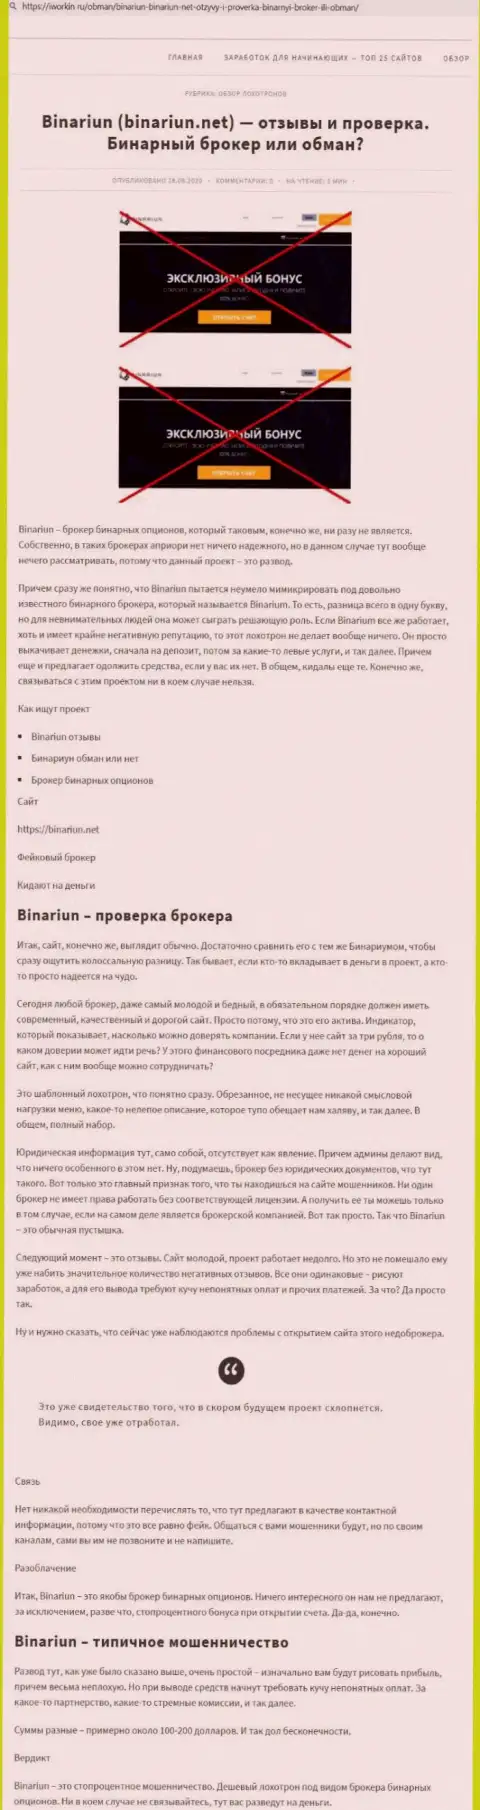 Binariun Net - это АФЕРИСТЫ !!! Особенности работы КИДАЛОВА (обзор мошеннических деяний)